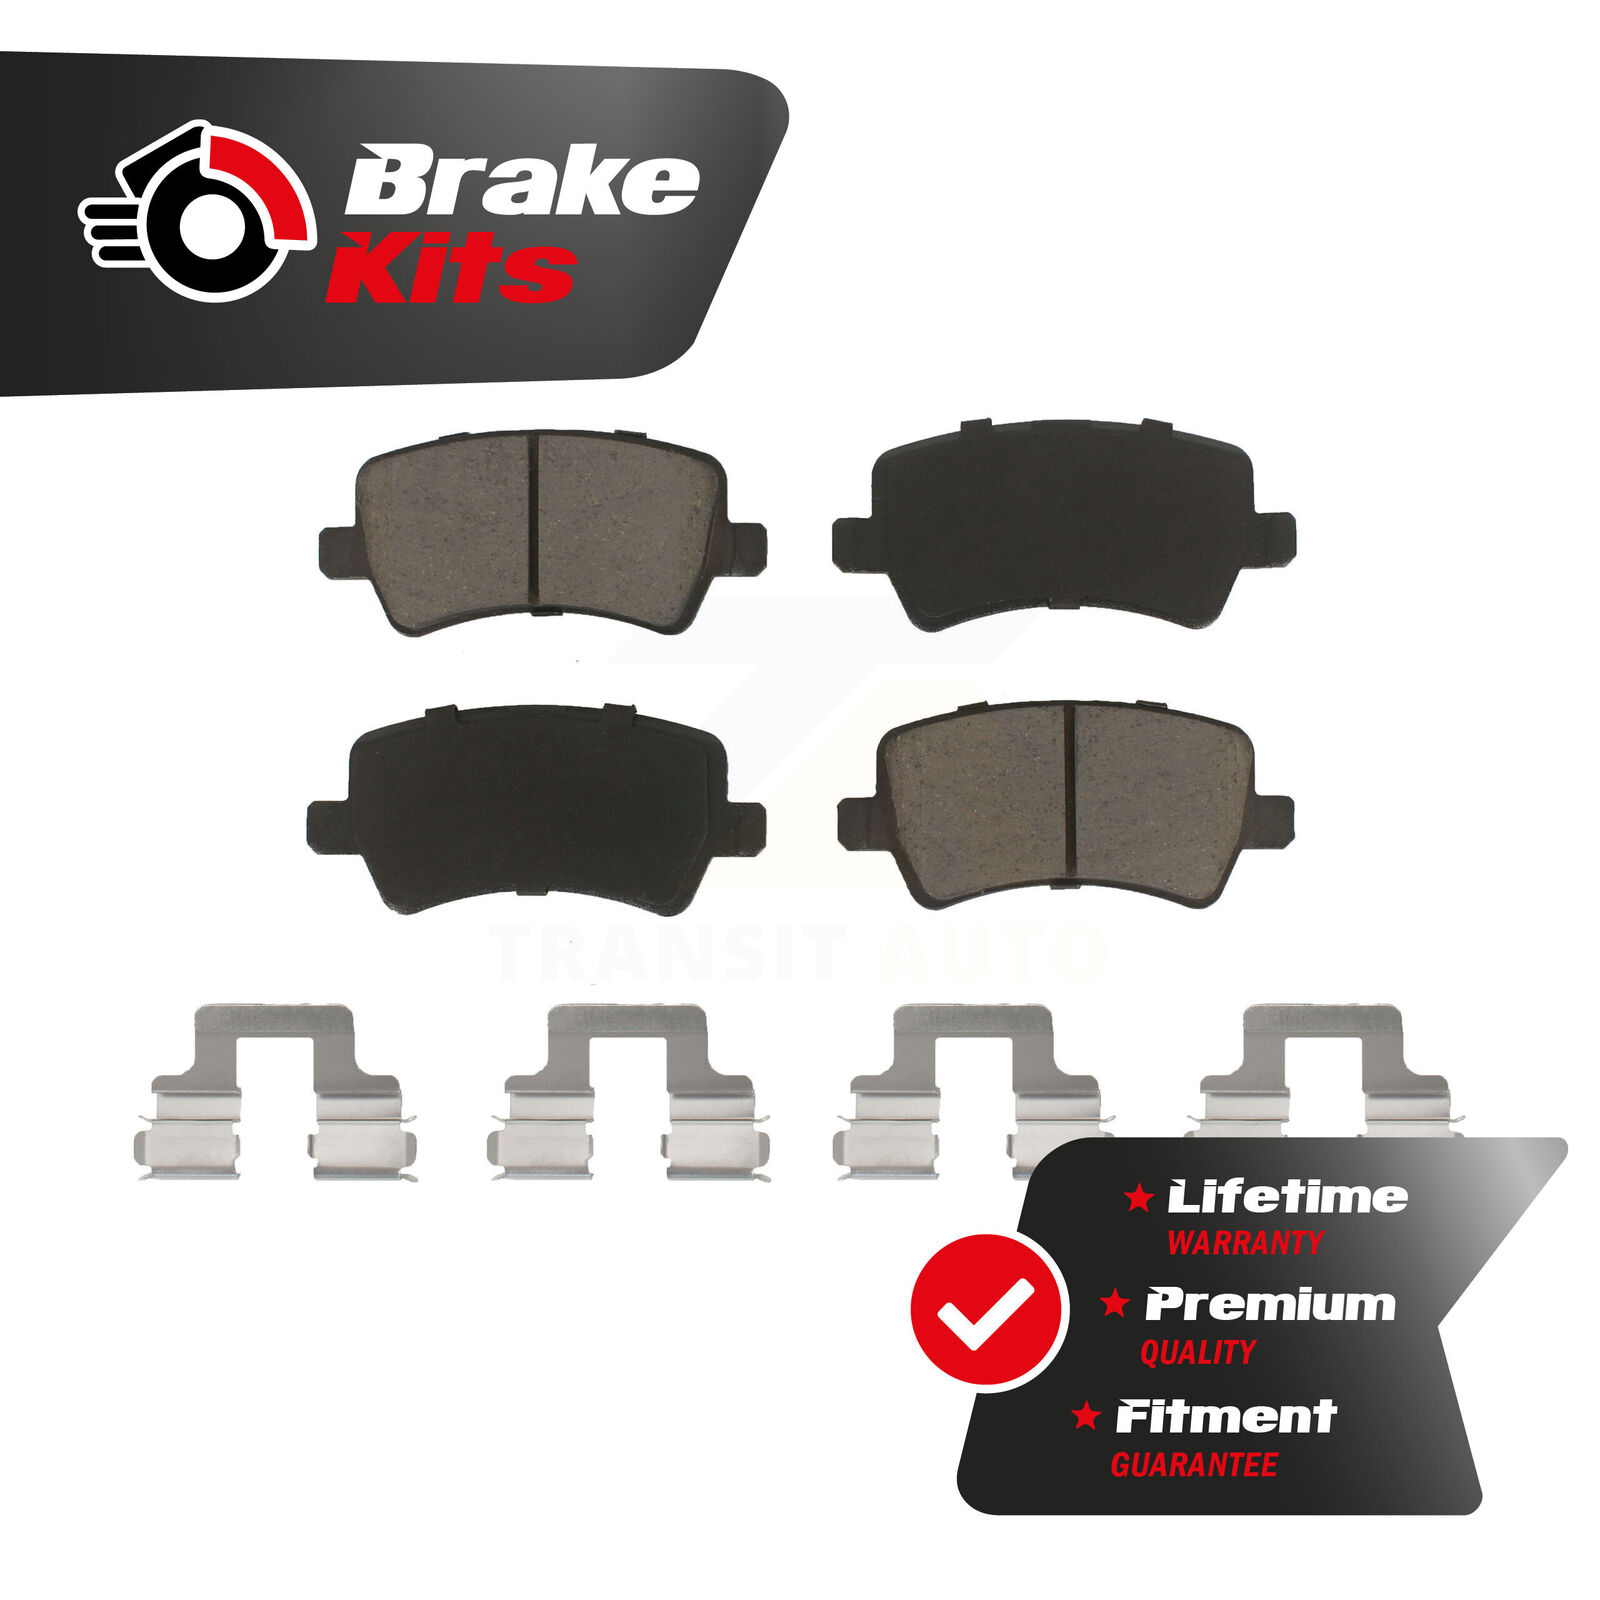 Rear Ceramic Brake Pads Set For 2010-2017 Volvo XC60 2011-2018 S60